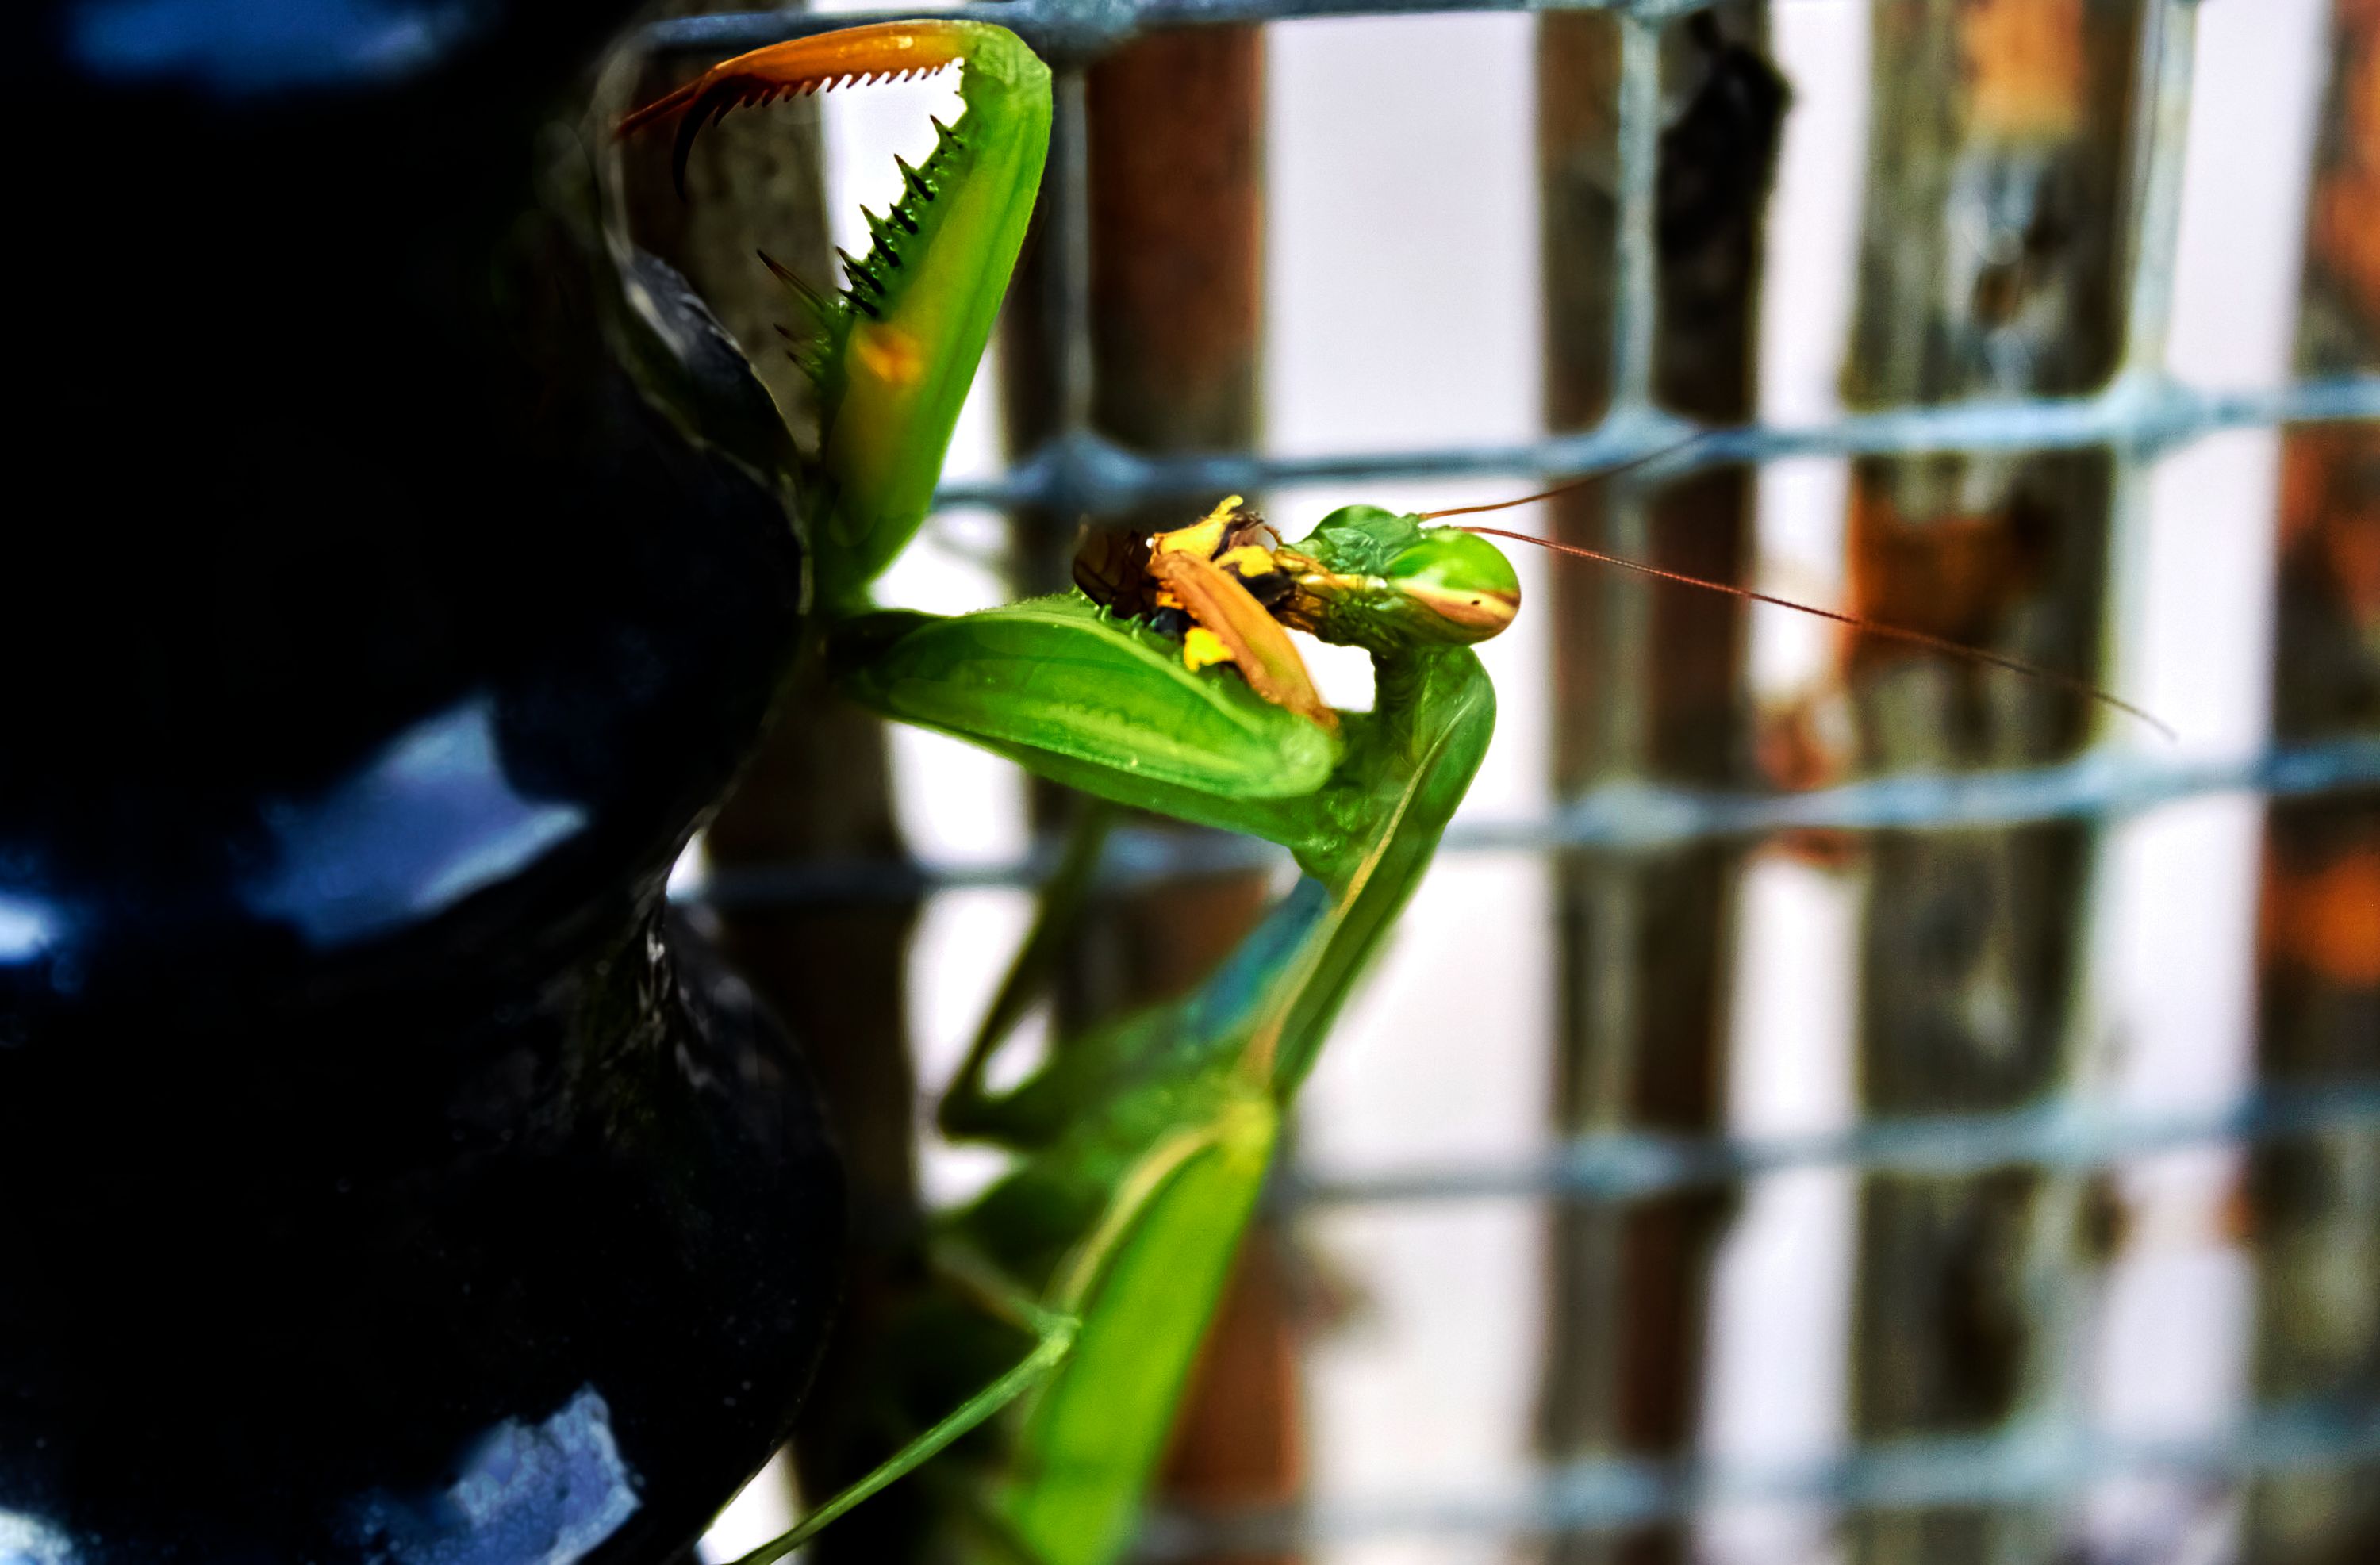 Mantis con mirada desafiante, comiendo un insecto